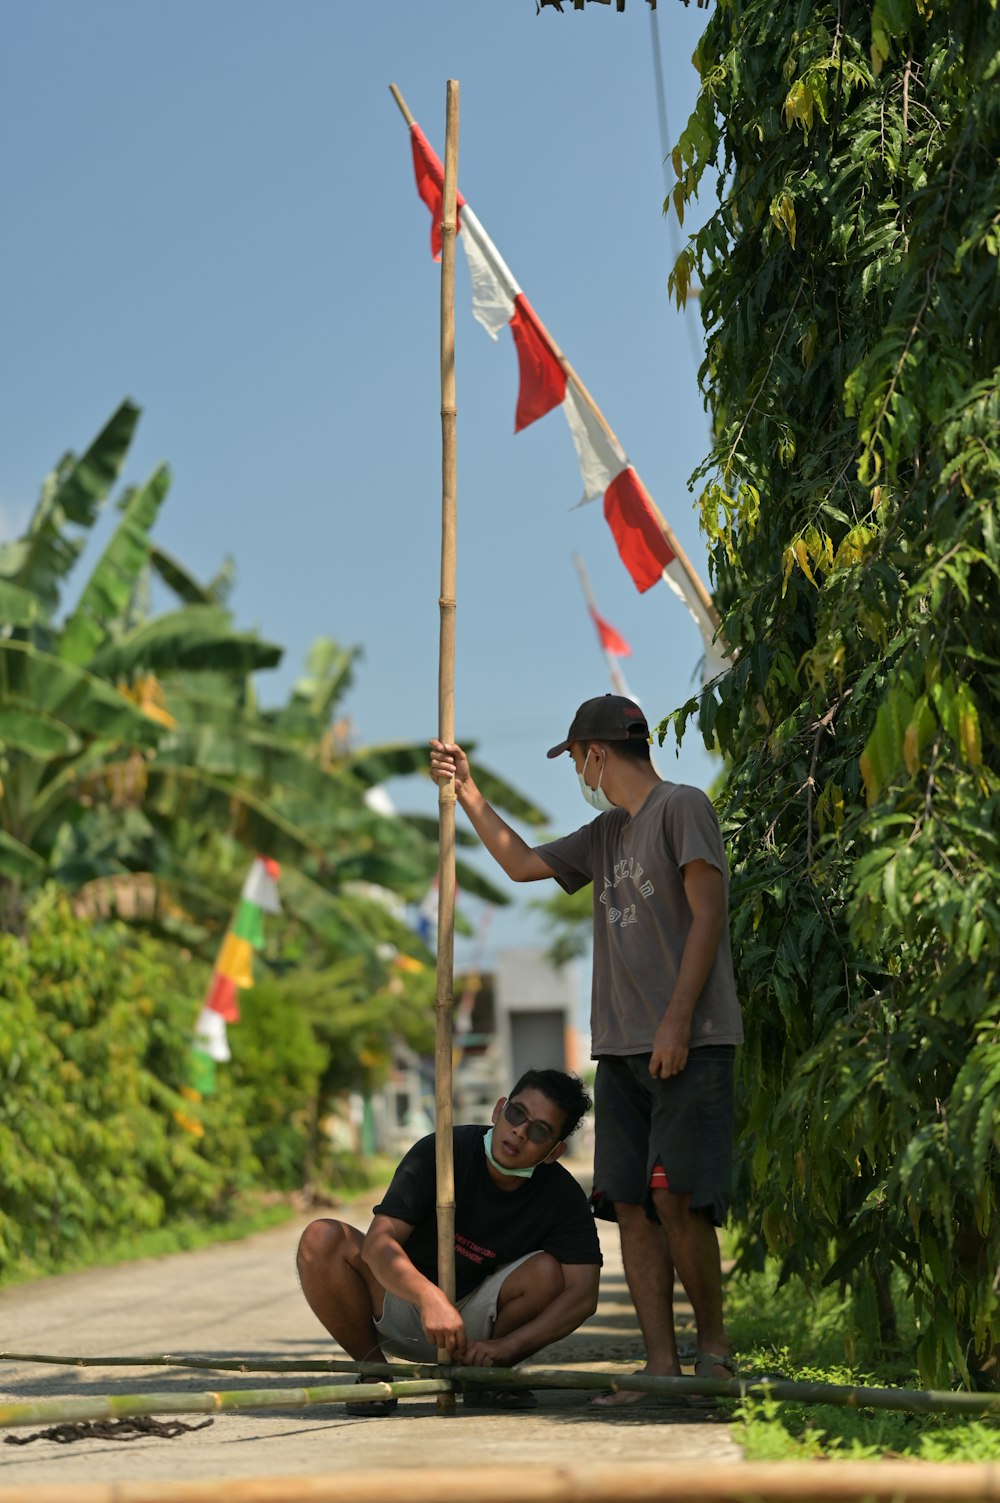 Un uomo inginocchiato accanto a un uomo che regge una bandiera